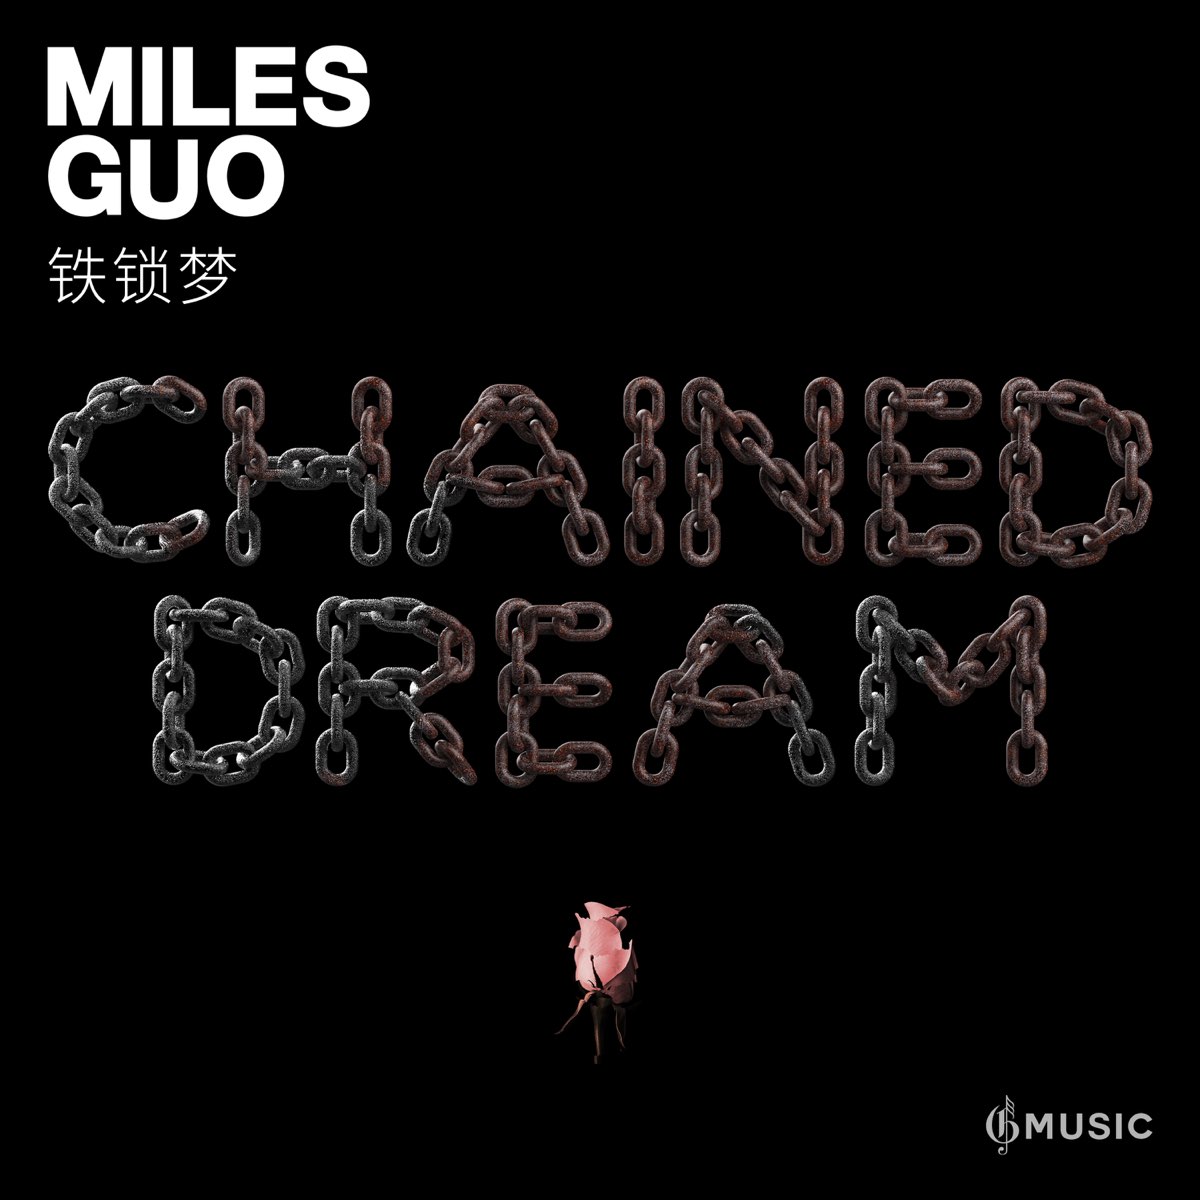 Dream miles. Miles Guo.